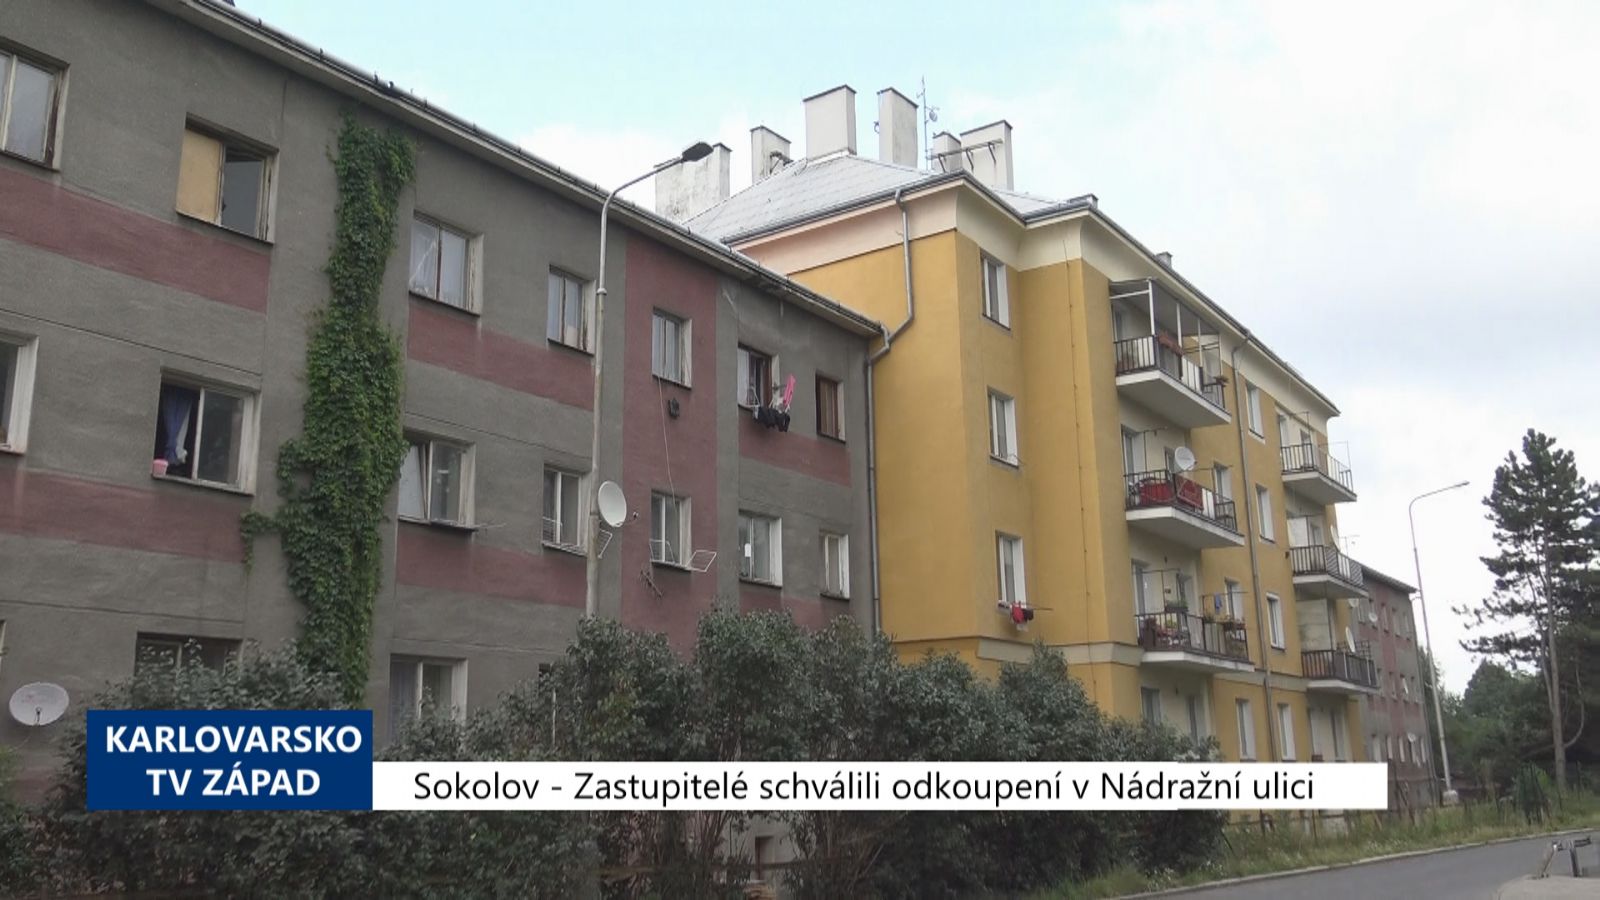 Sokolov: Zastupitelé schválili odkoupení domů v Nádražní ulici (TV Západ)